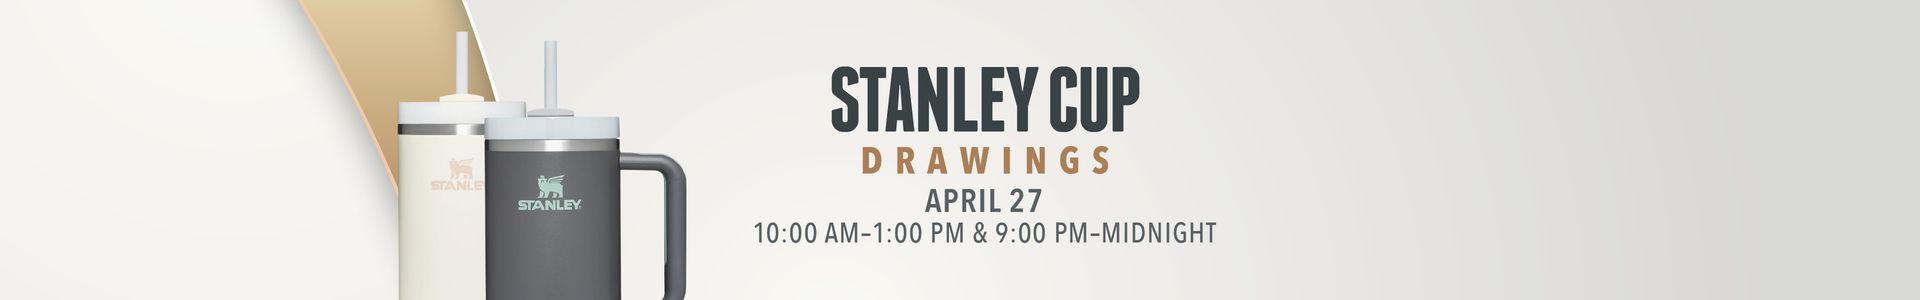 Stanley Cup Drawings